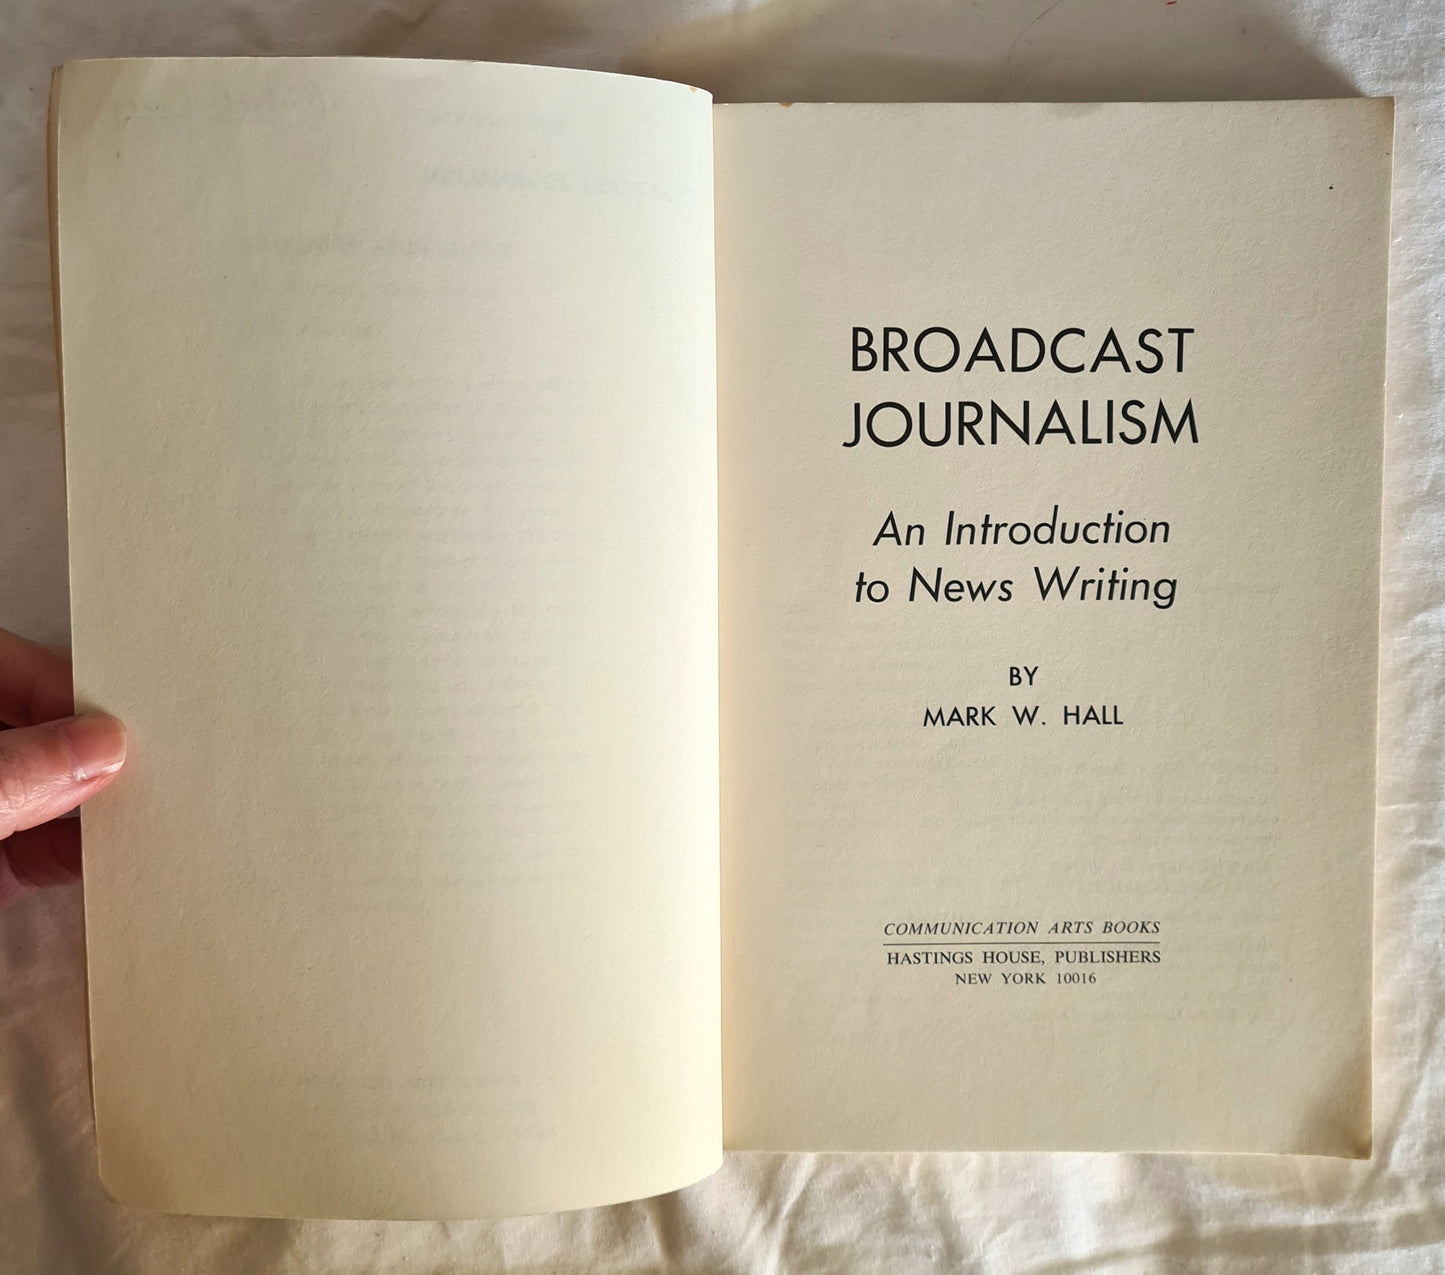 Broadcast Journalism by Mark W. Hall